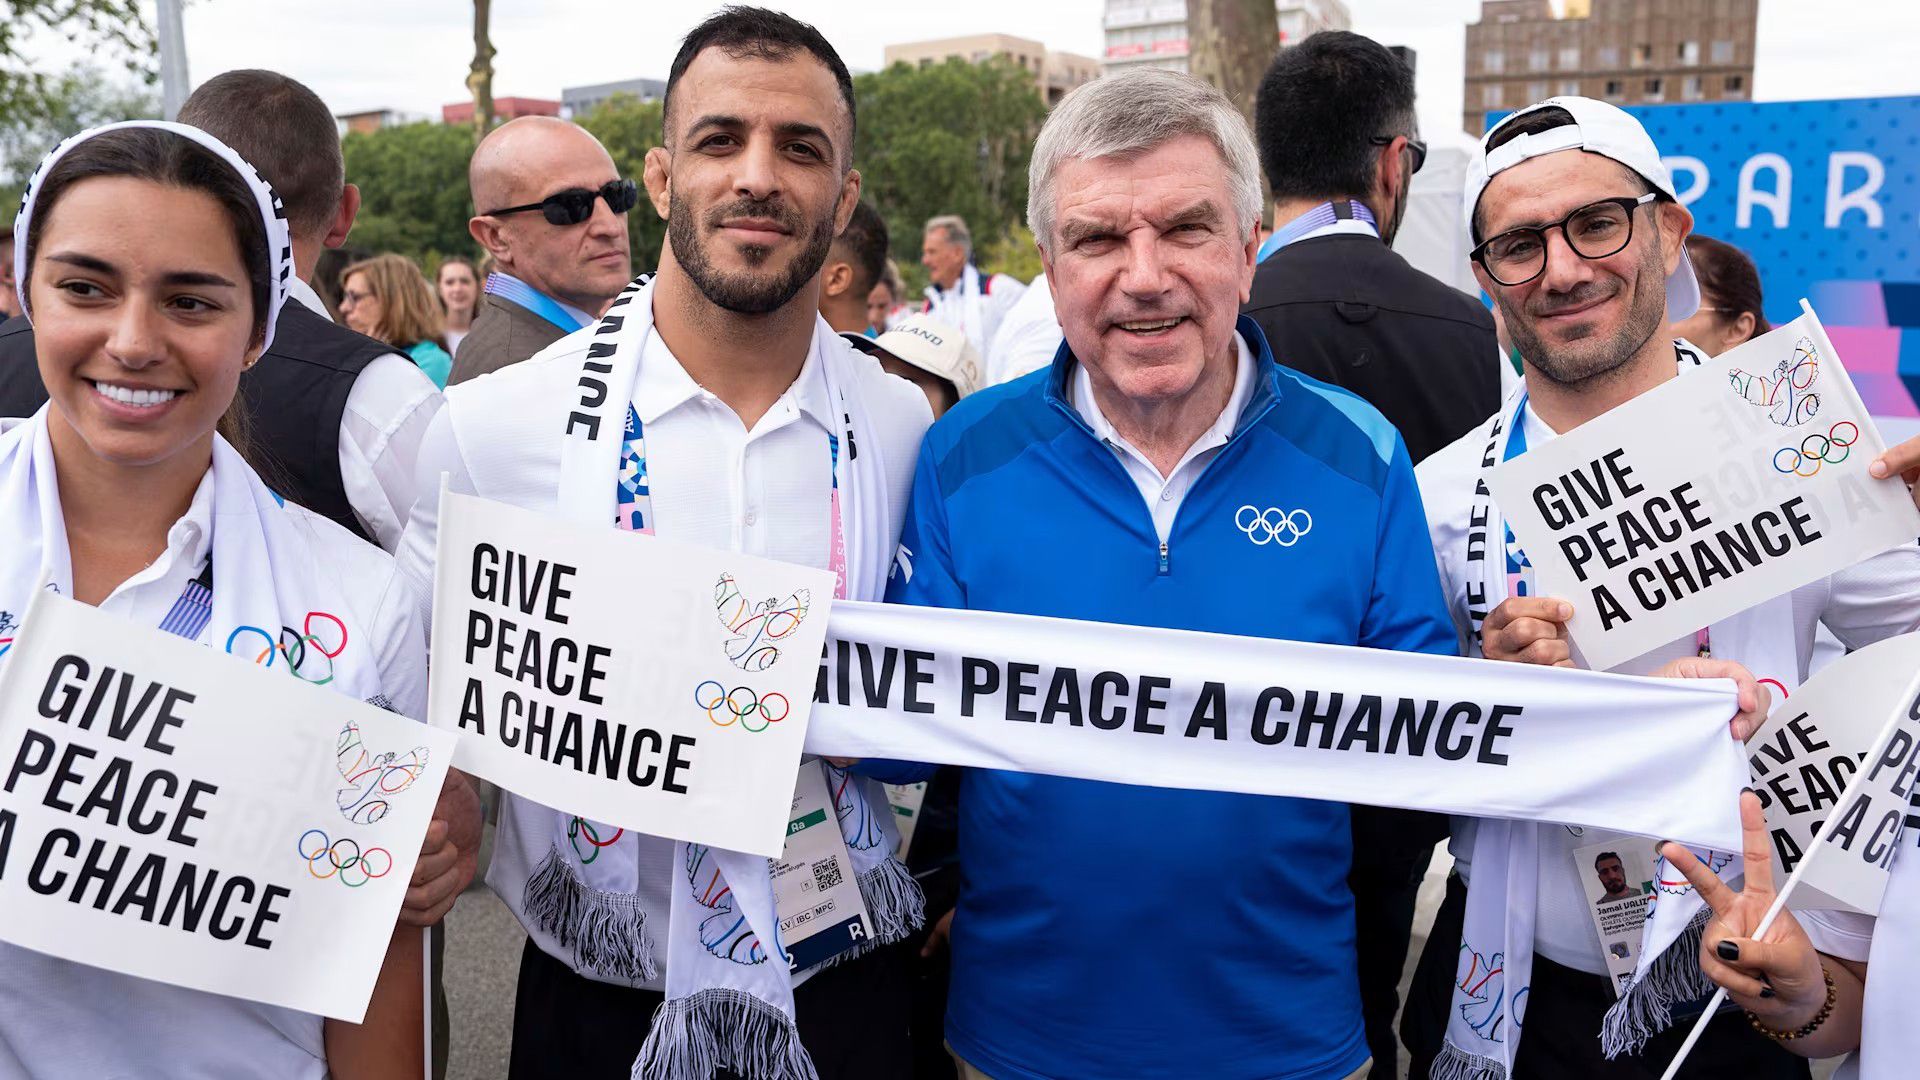 Sálakkal, zászlócskákkal és fotókkal harcol a békéért a Nemzetközi Olimpiai Bizottság elnöke